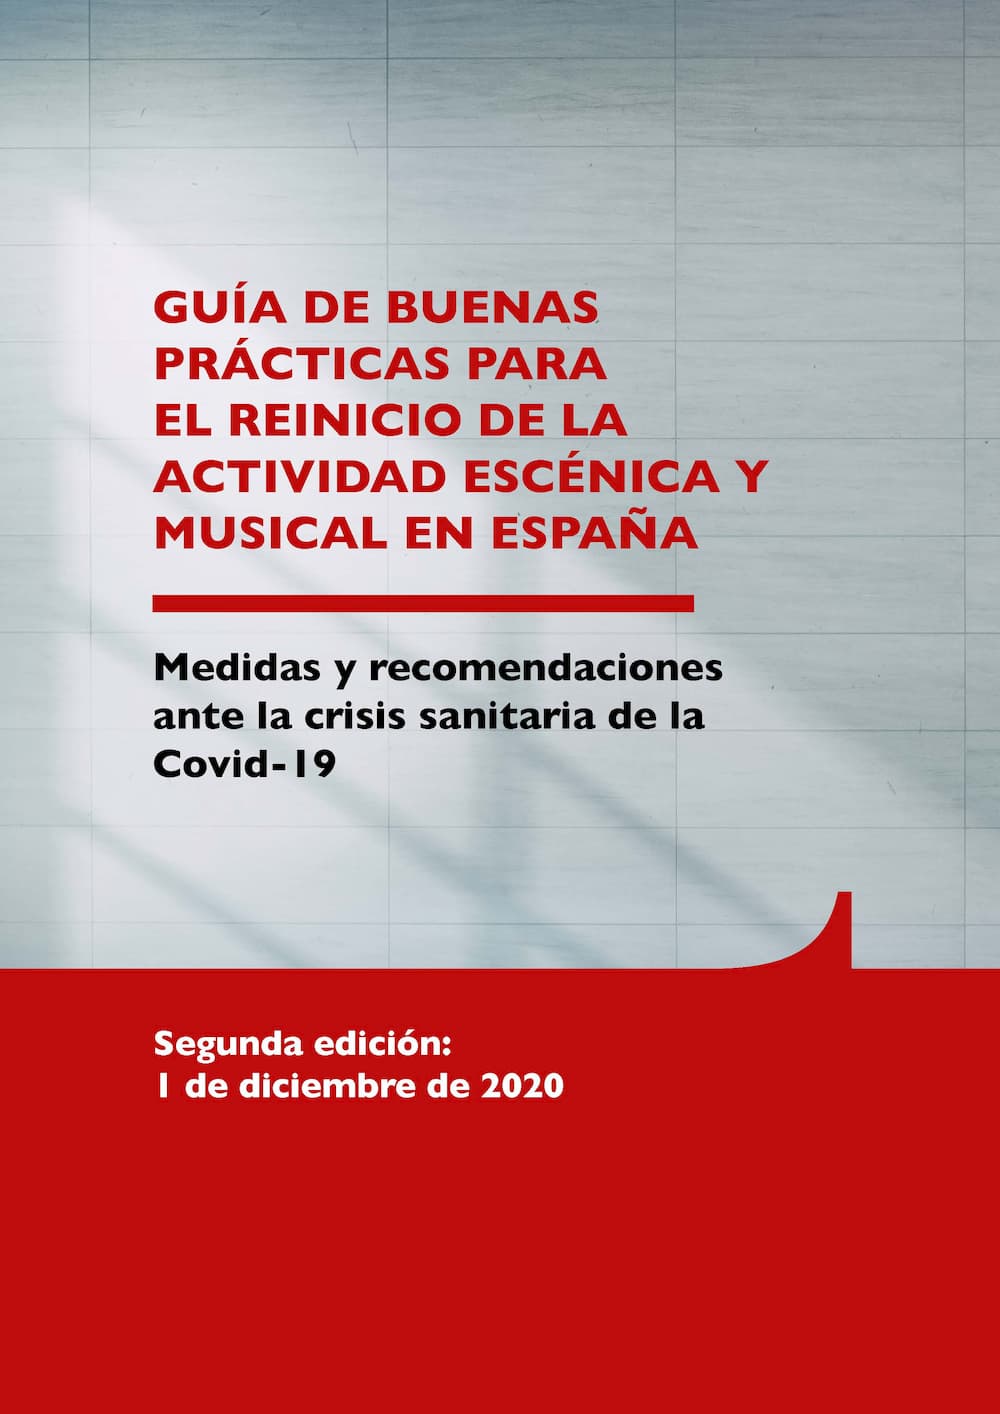 GUIA DE BONES PRÀCTIQUES PER AL REINICI DE L'ACTIVITAT ESCÈNICA I MUSICAL A ESPANYA